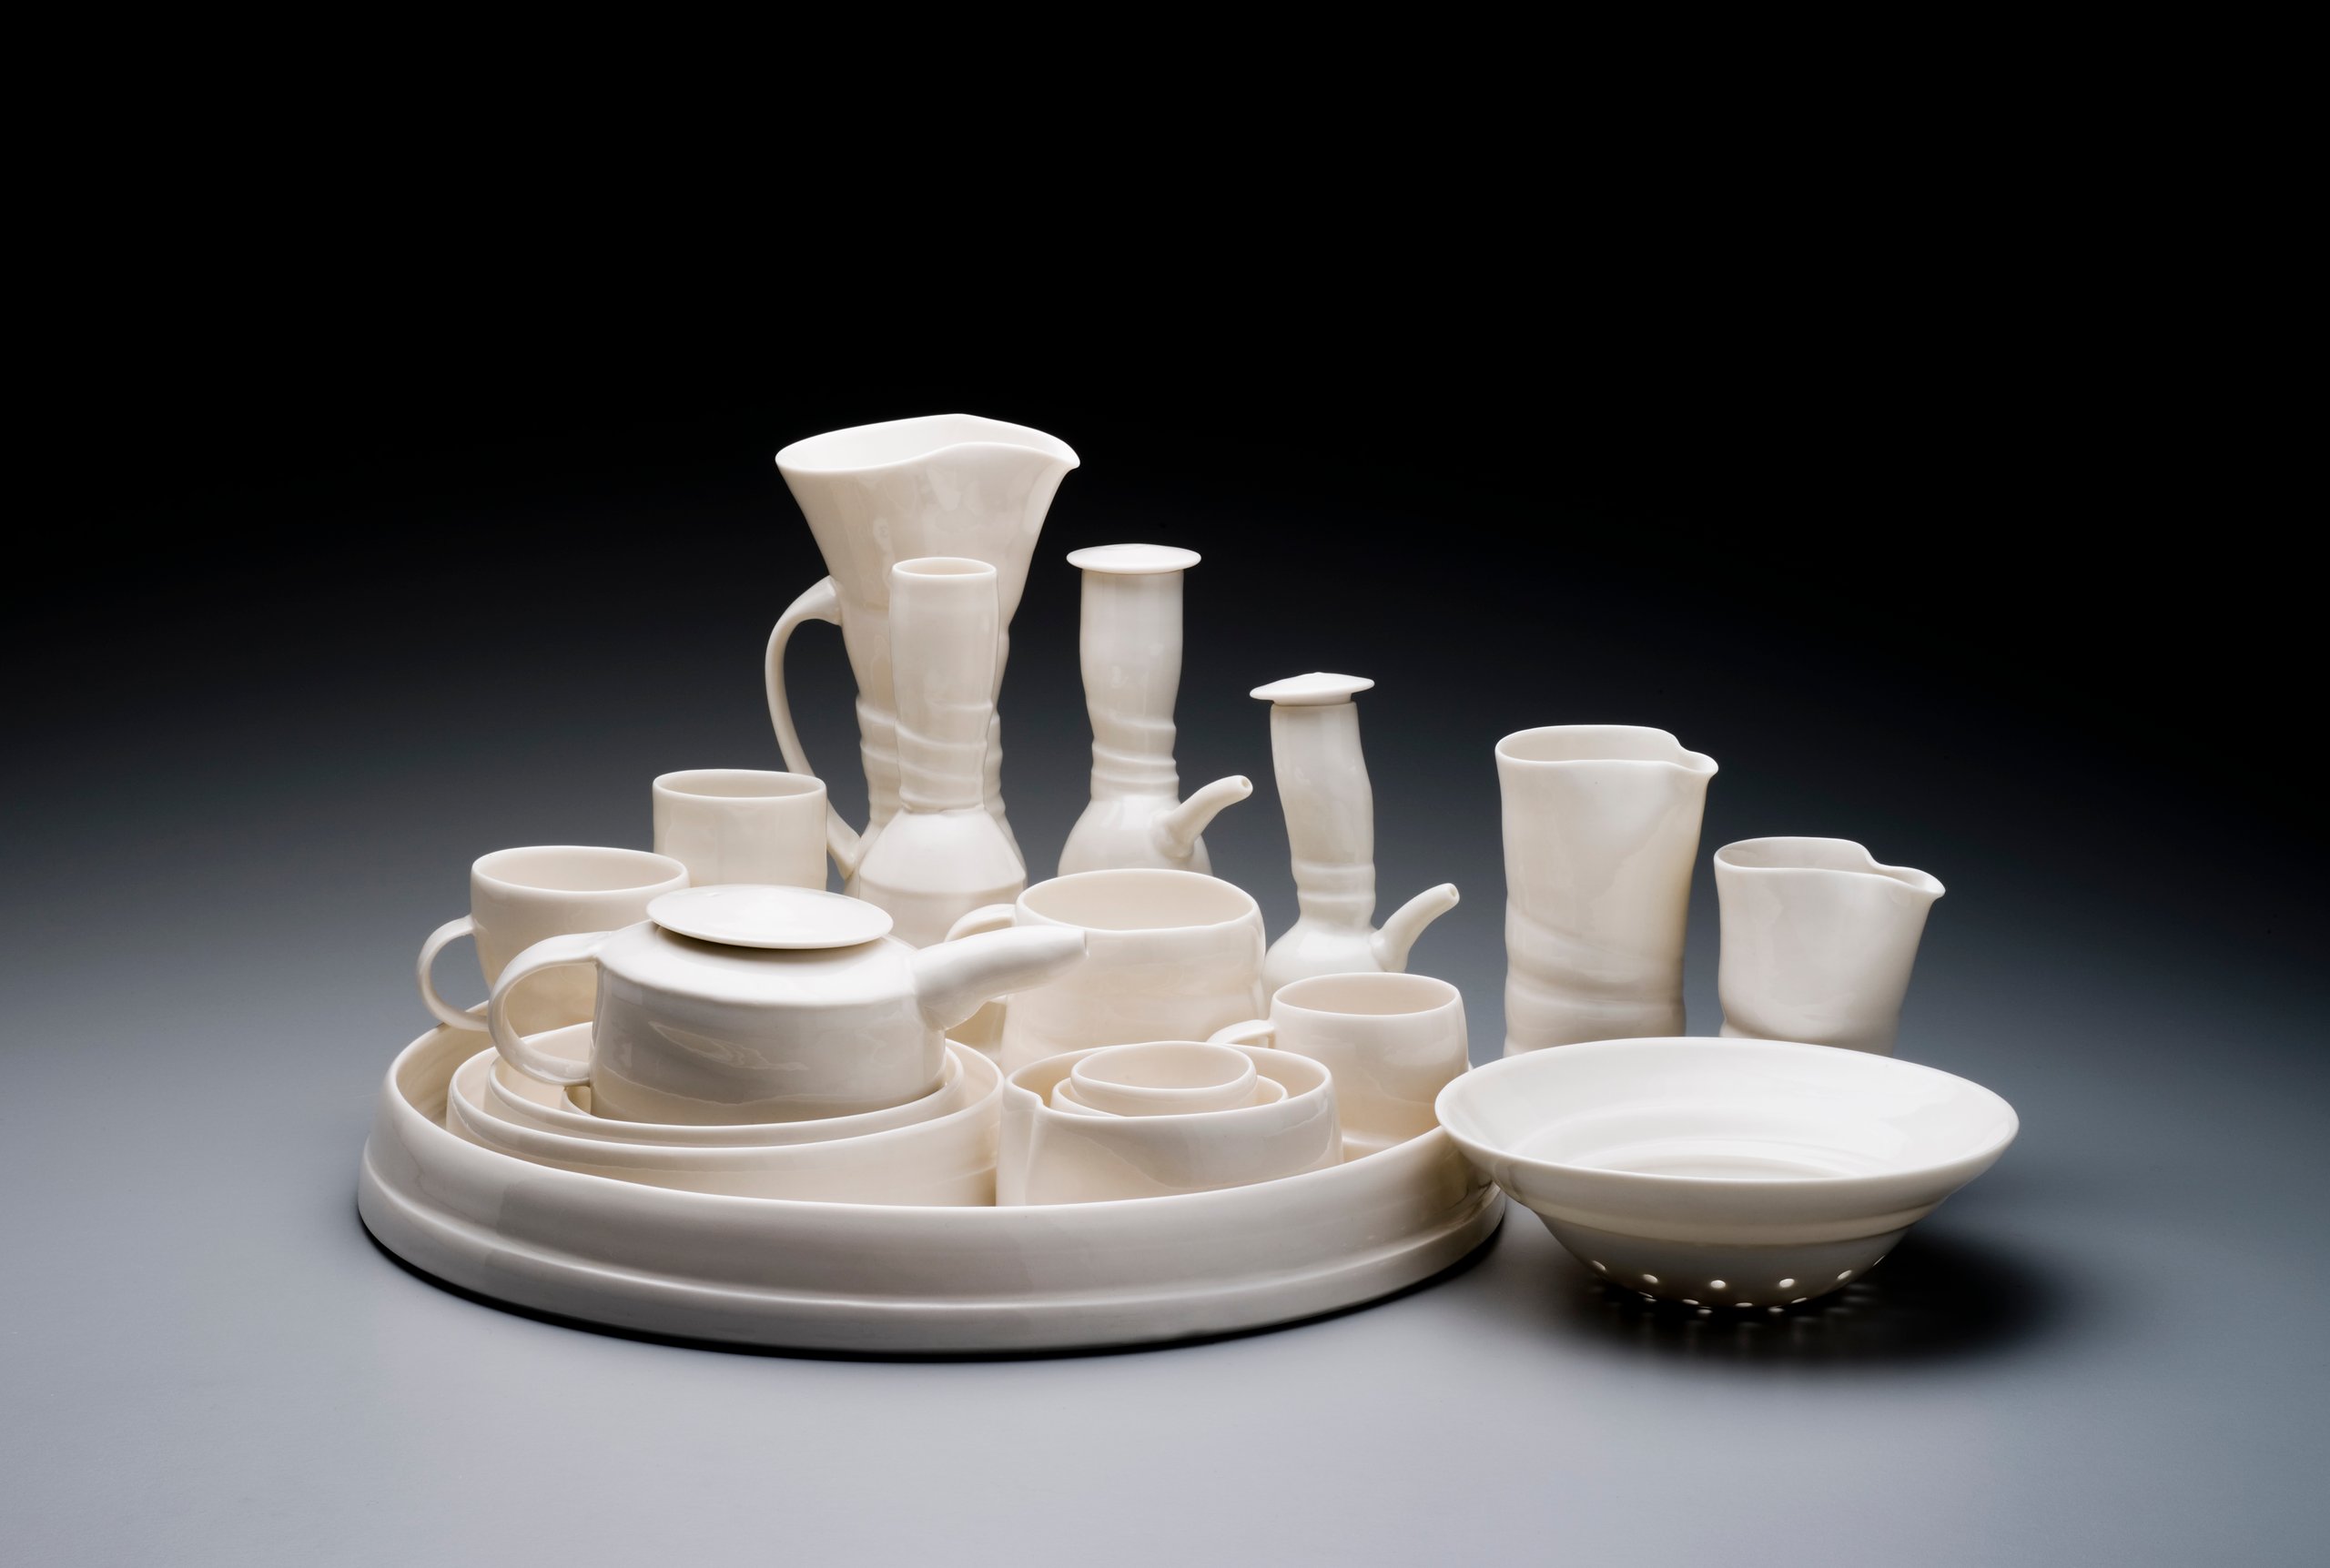 'Leaving Home' ceramic series by Janet DeBoos